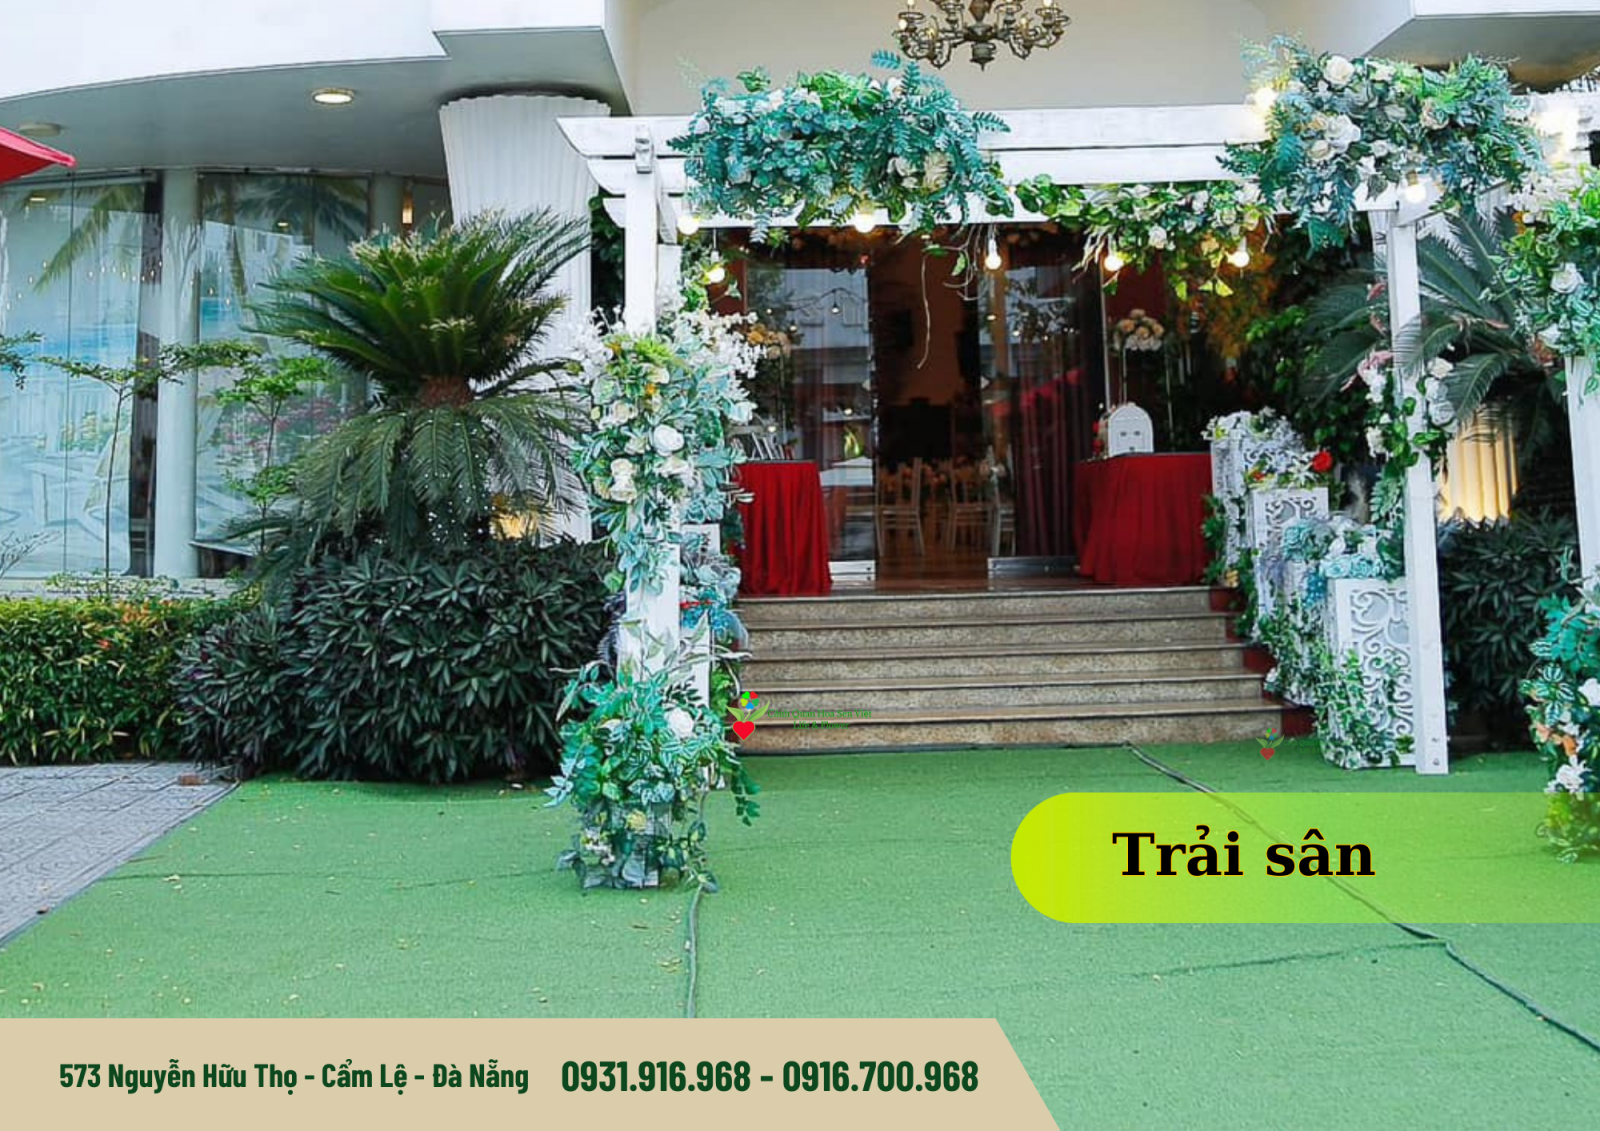 Cho thuê cỏ nhân tạo - Cửa hàng thảm cỏ nhân tạo Đà Nẵng